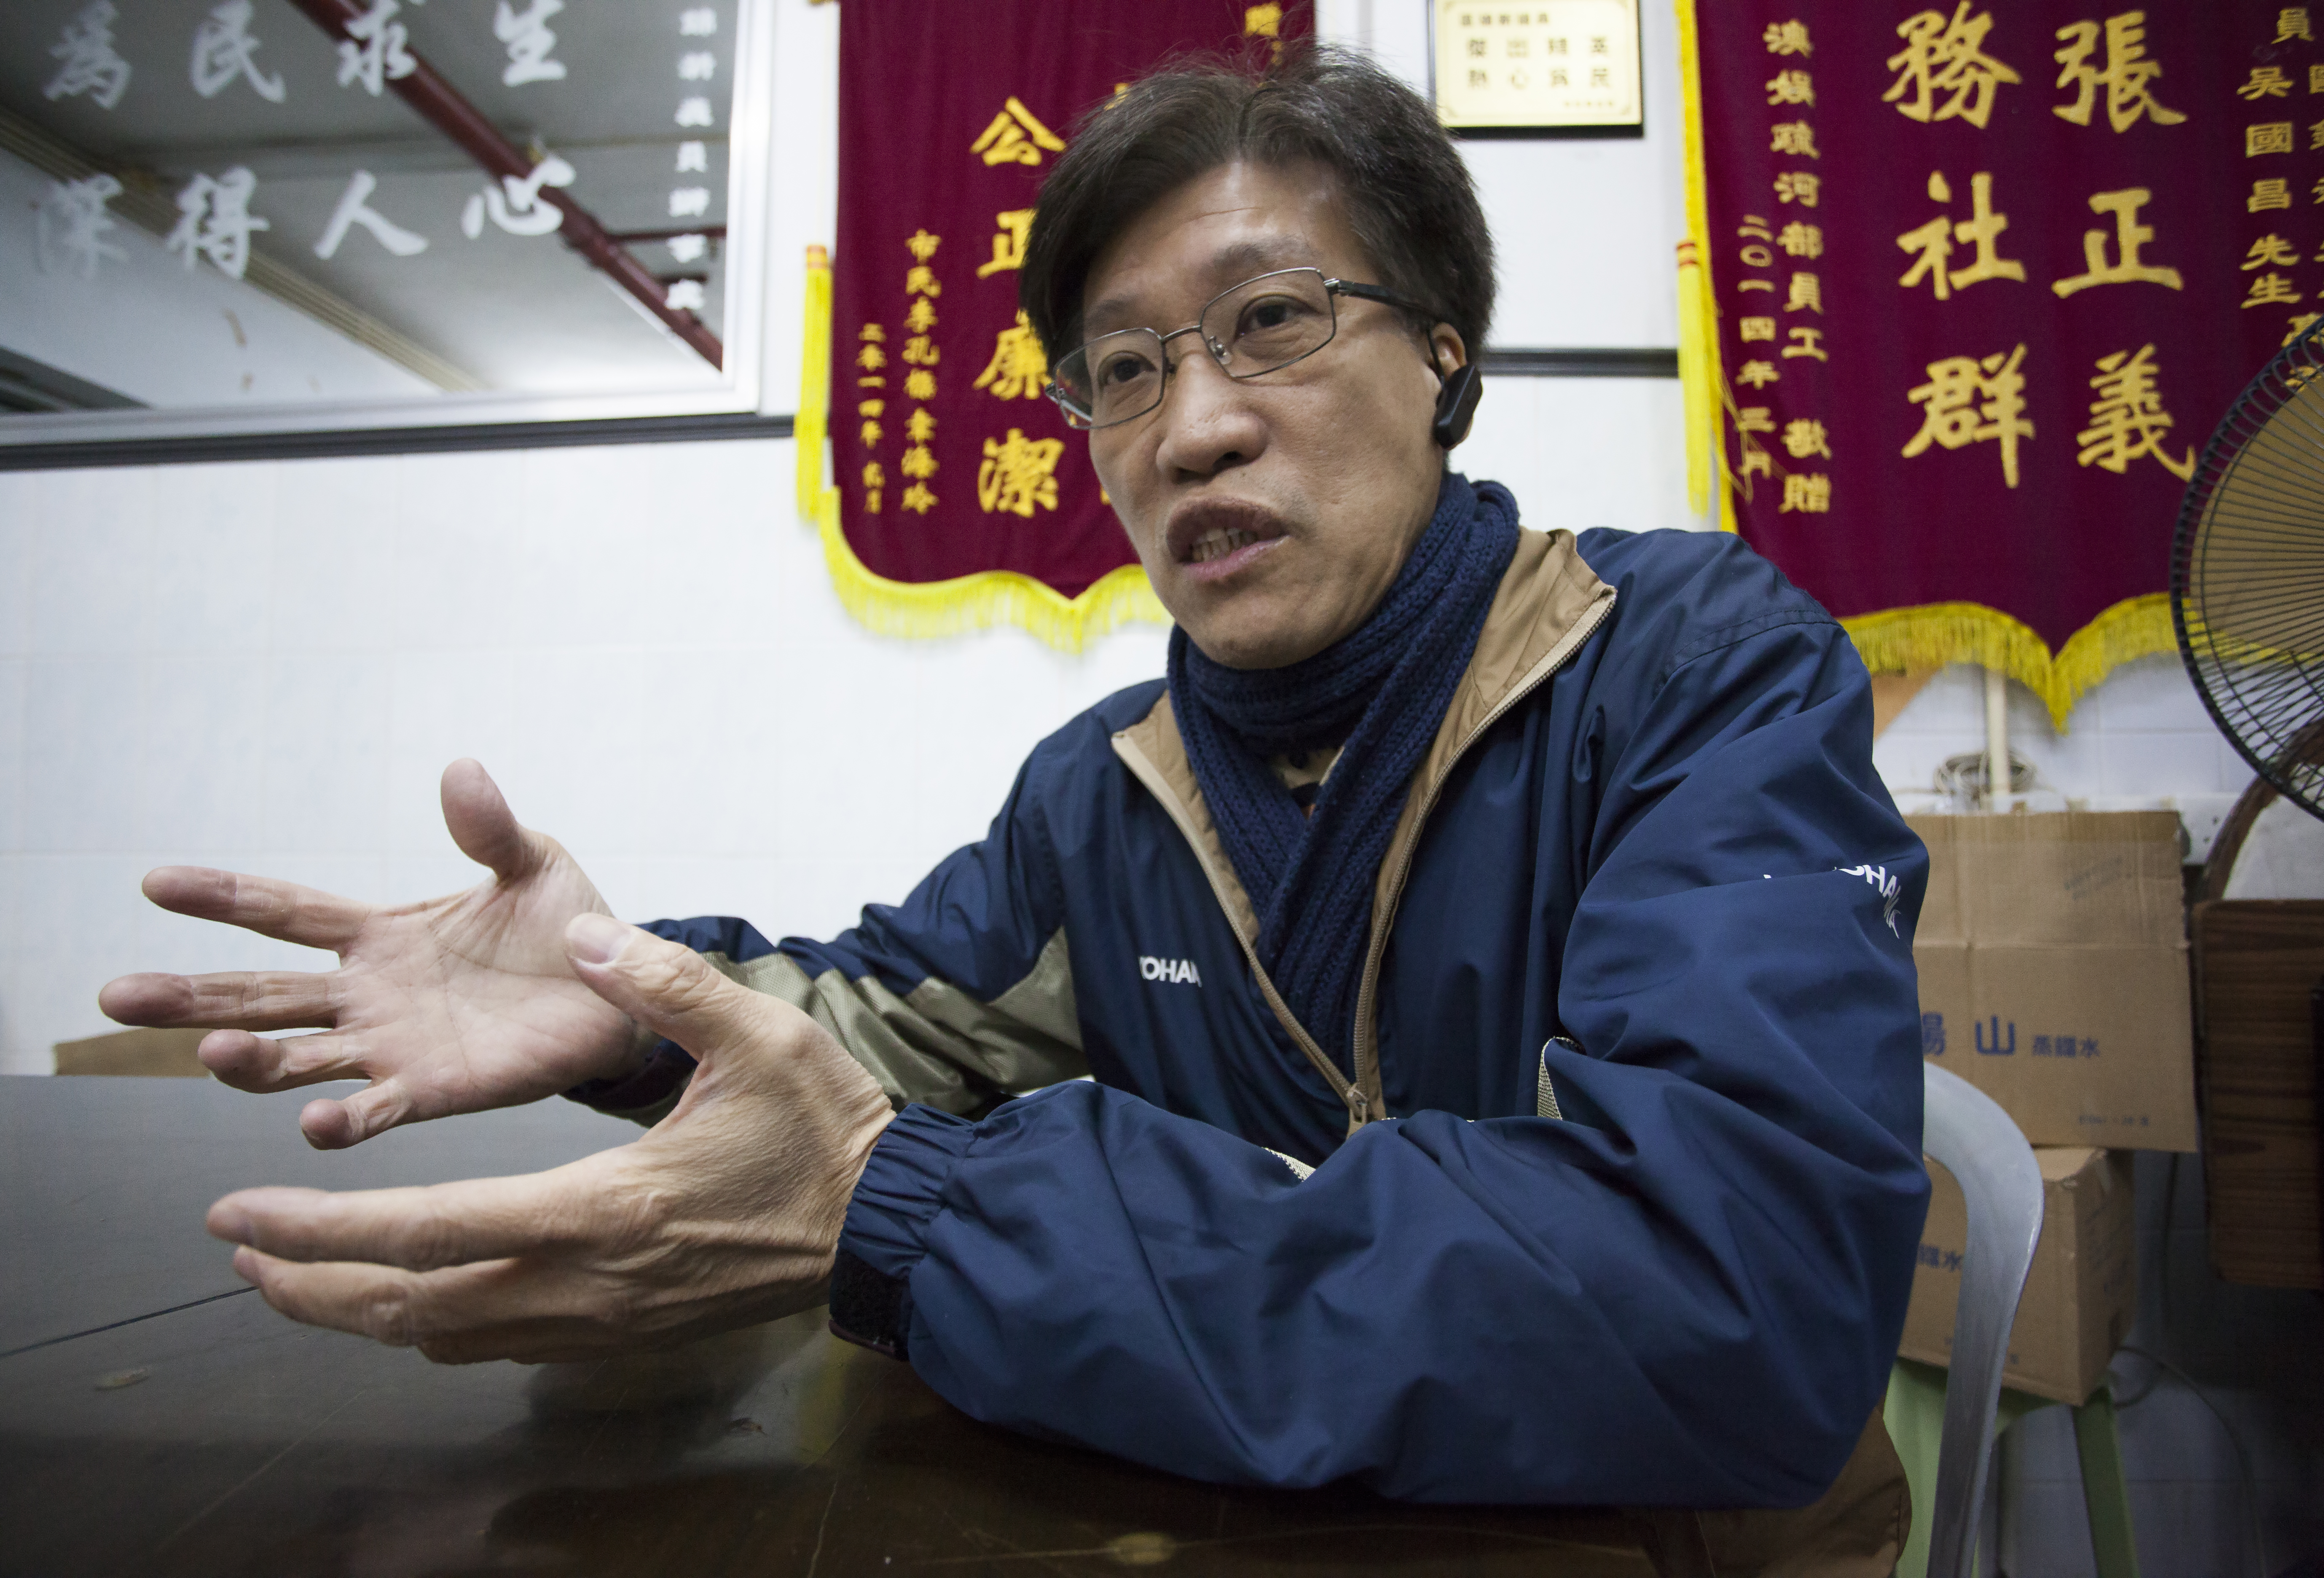 Au Kam San, deputado e ex-membro da Associação Novo Macau